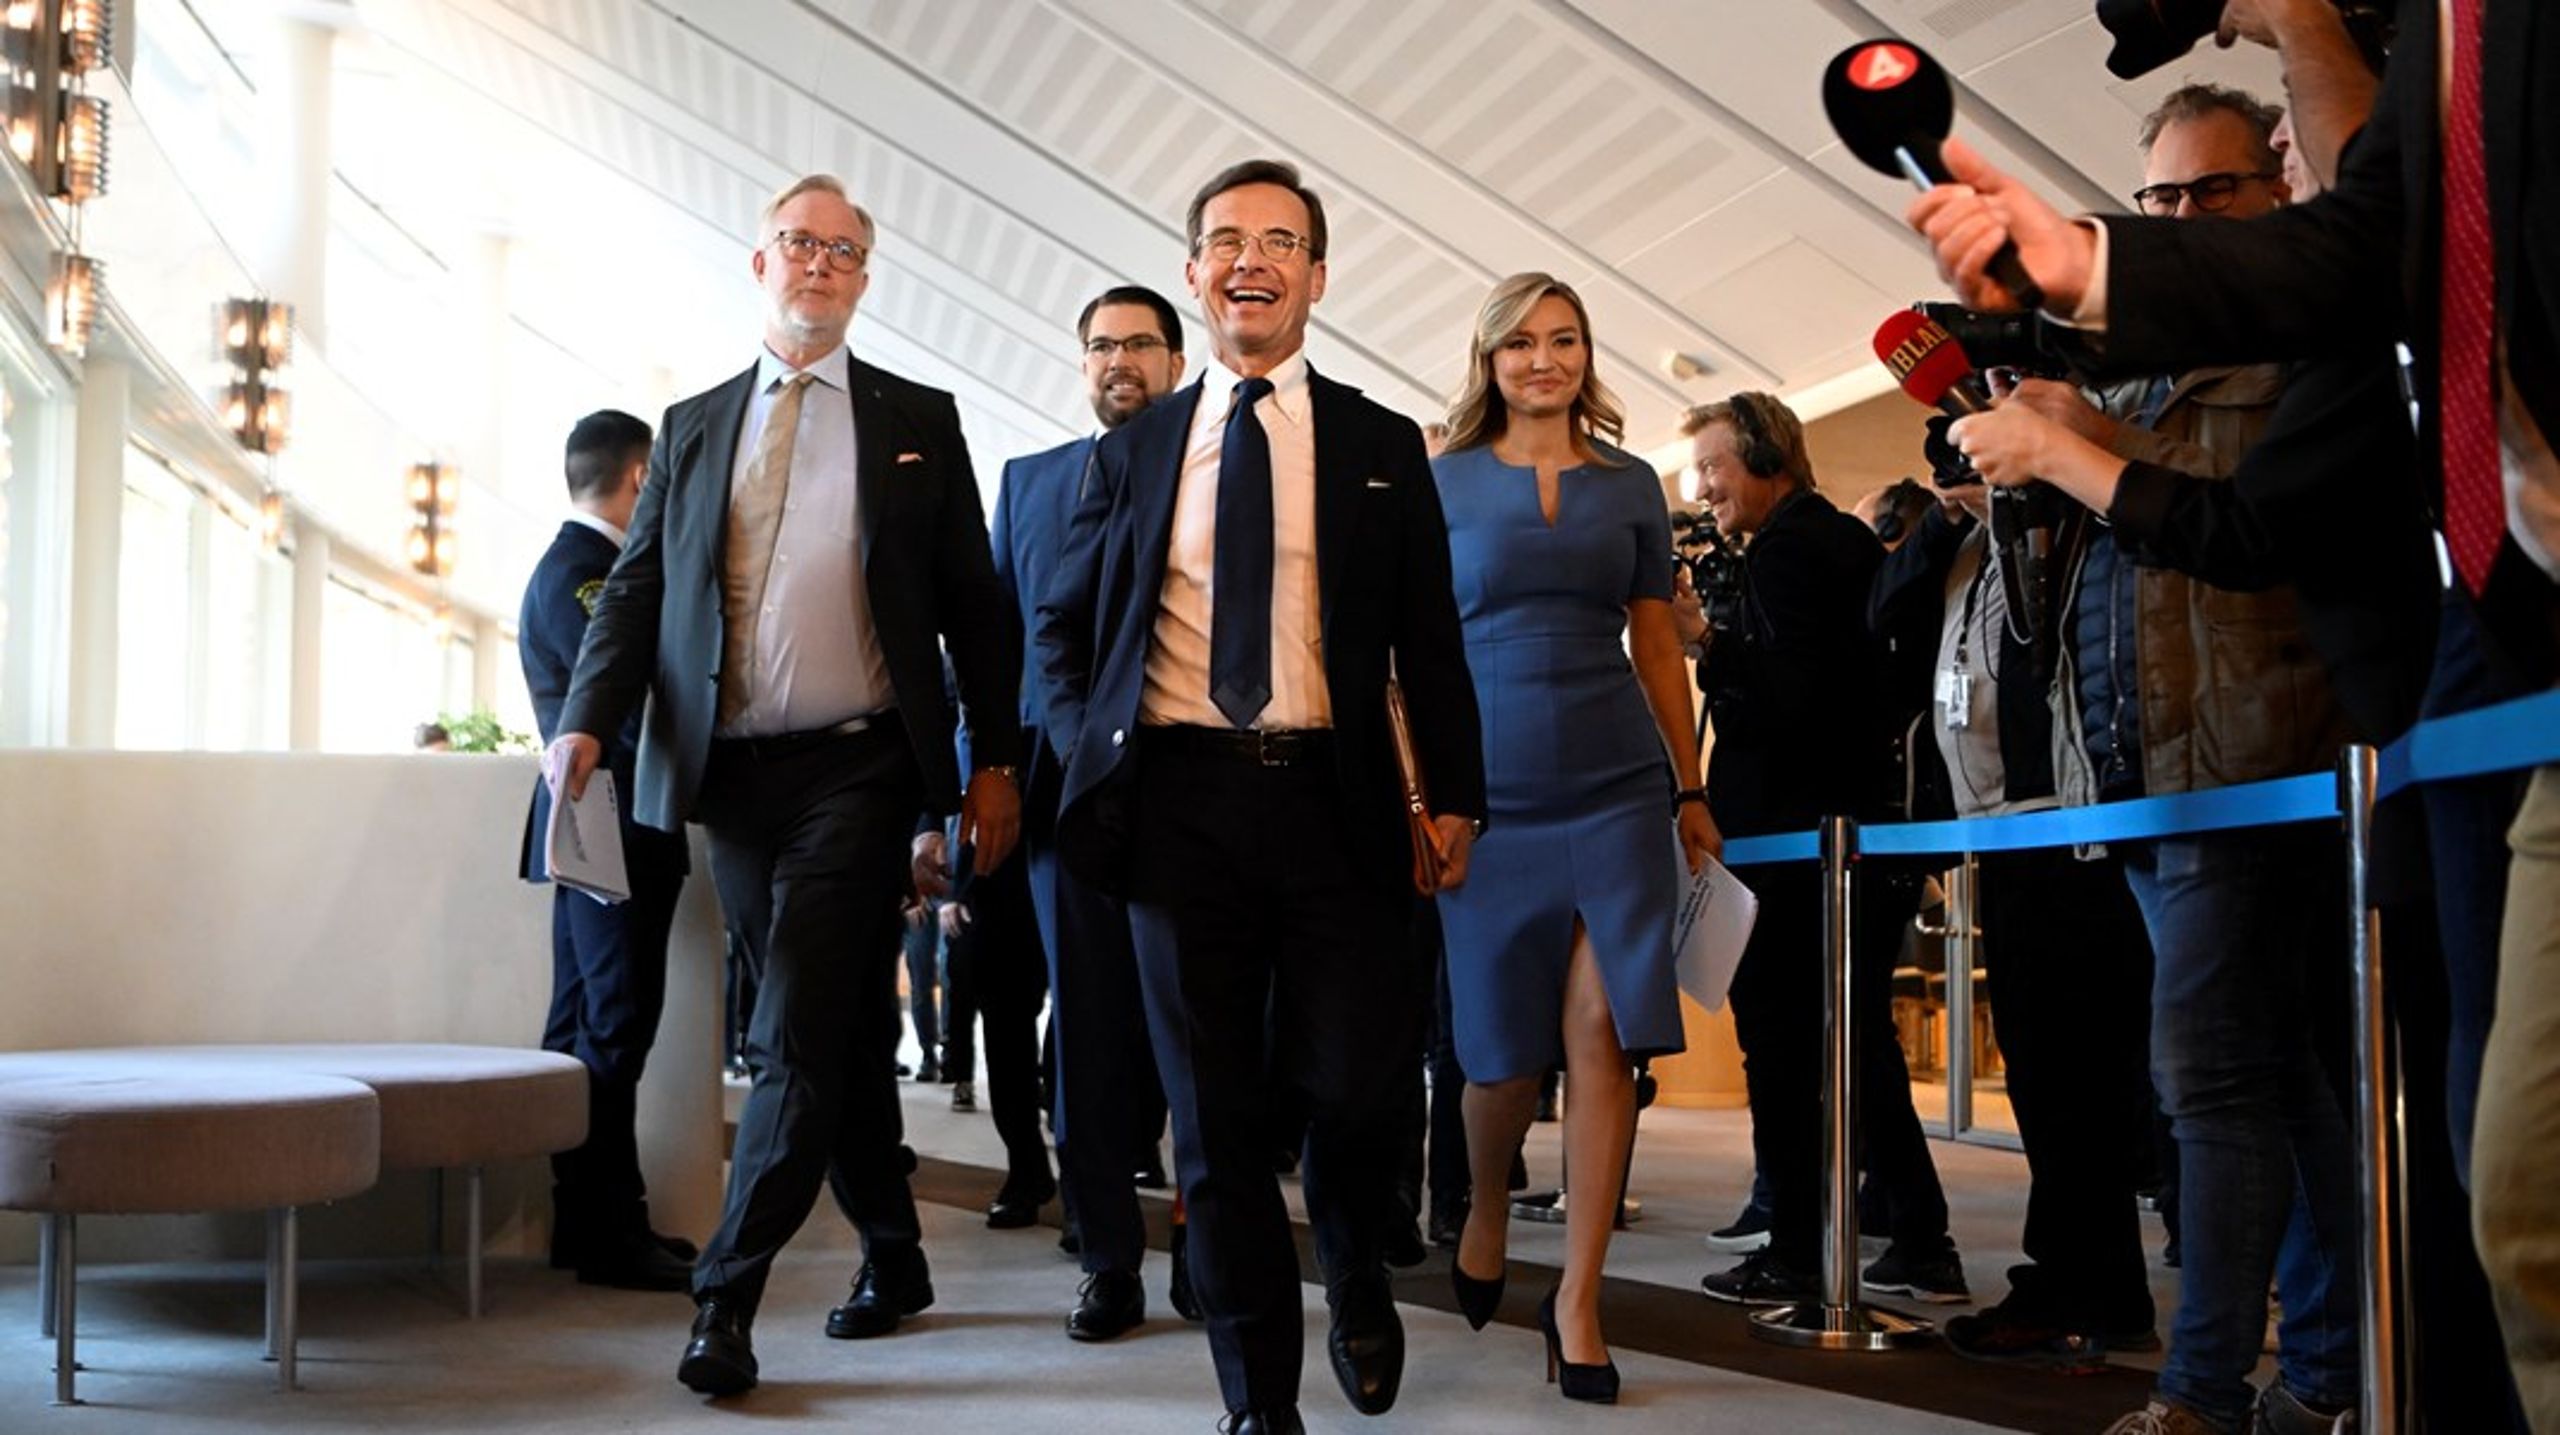 Mandag 17. oktober godkendte den svenske&nbsp;Riksdag formelt, at Sverige får en ny borgerlig regering med Moderaternas Ulf Kristersson i spidsen. Nu præsenterer han regeringens ministre.&nbsp;<br>